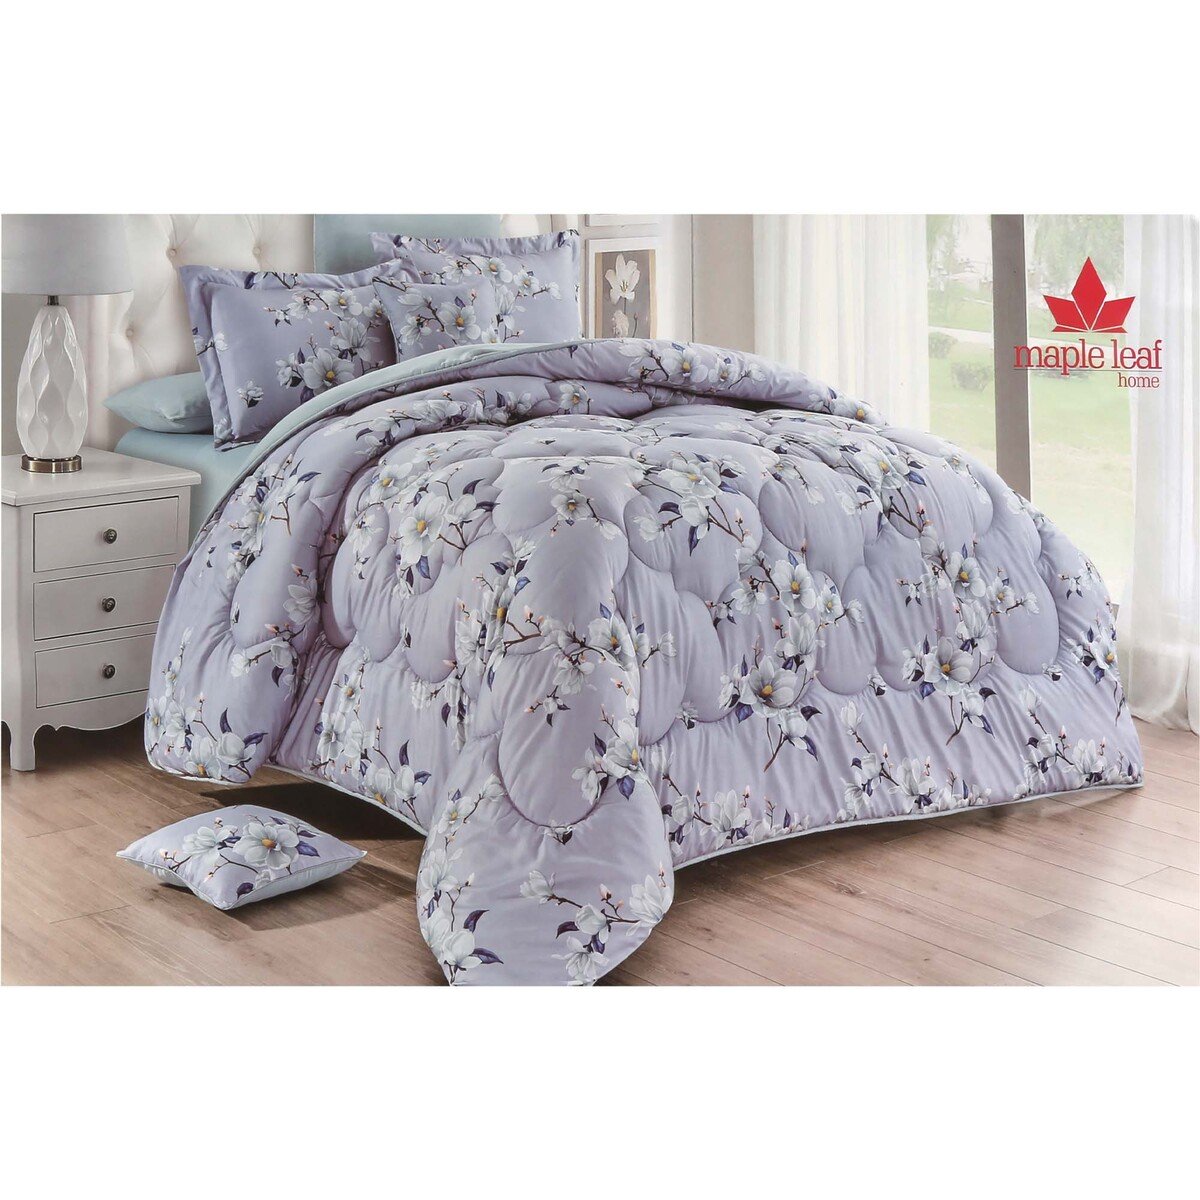 Maple Leaf Comforter Set 8pcs Set 240x260cm Assorted Colors & Designs